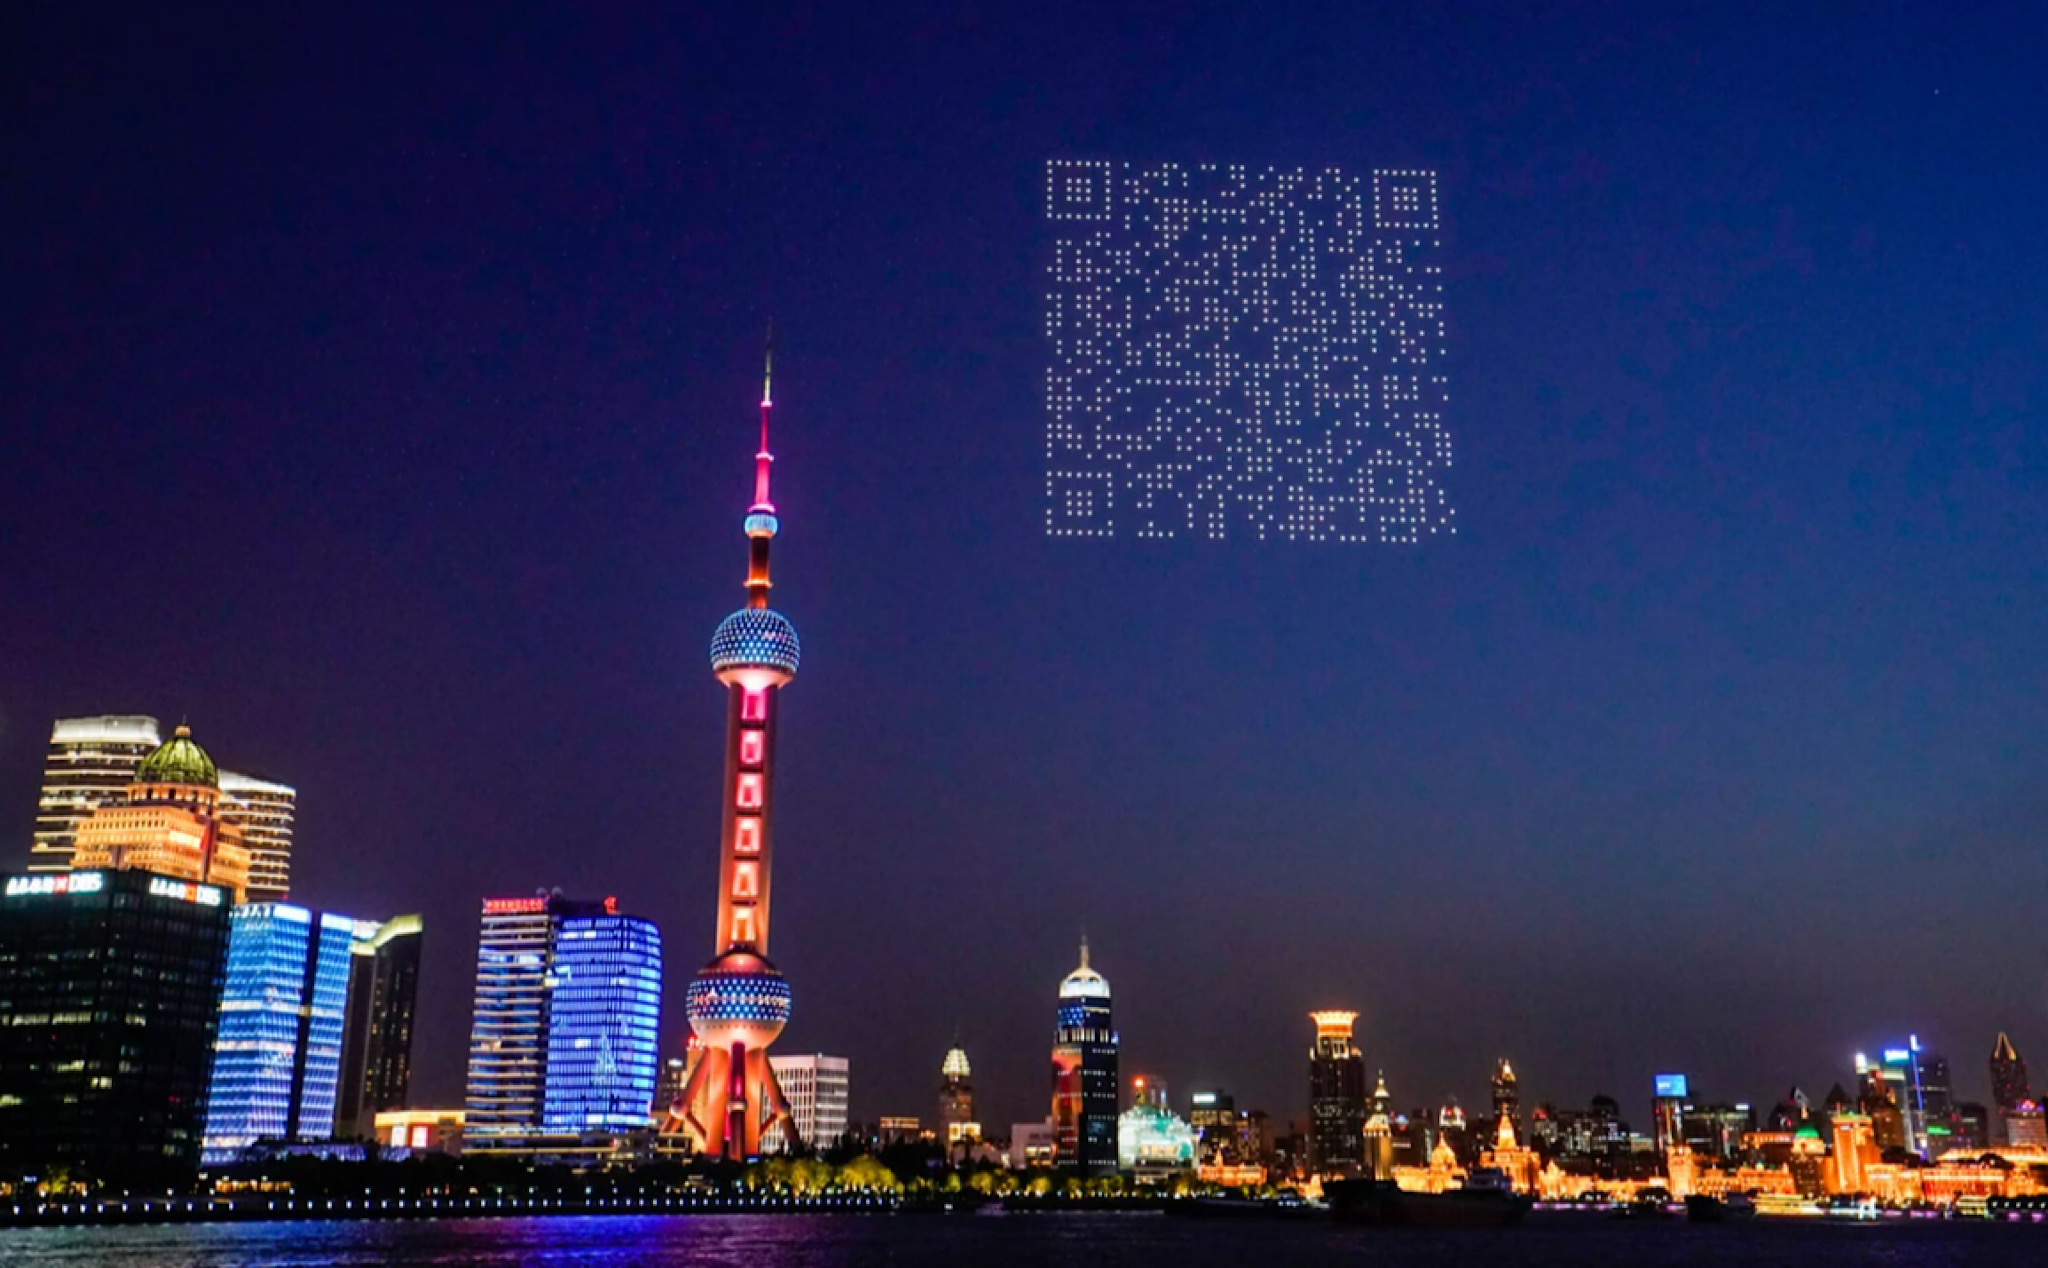 Hãng game Trung Quốc sử dụng drone để chiếu QR Code hiện trên không trung